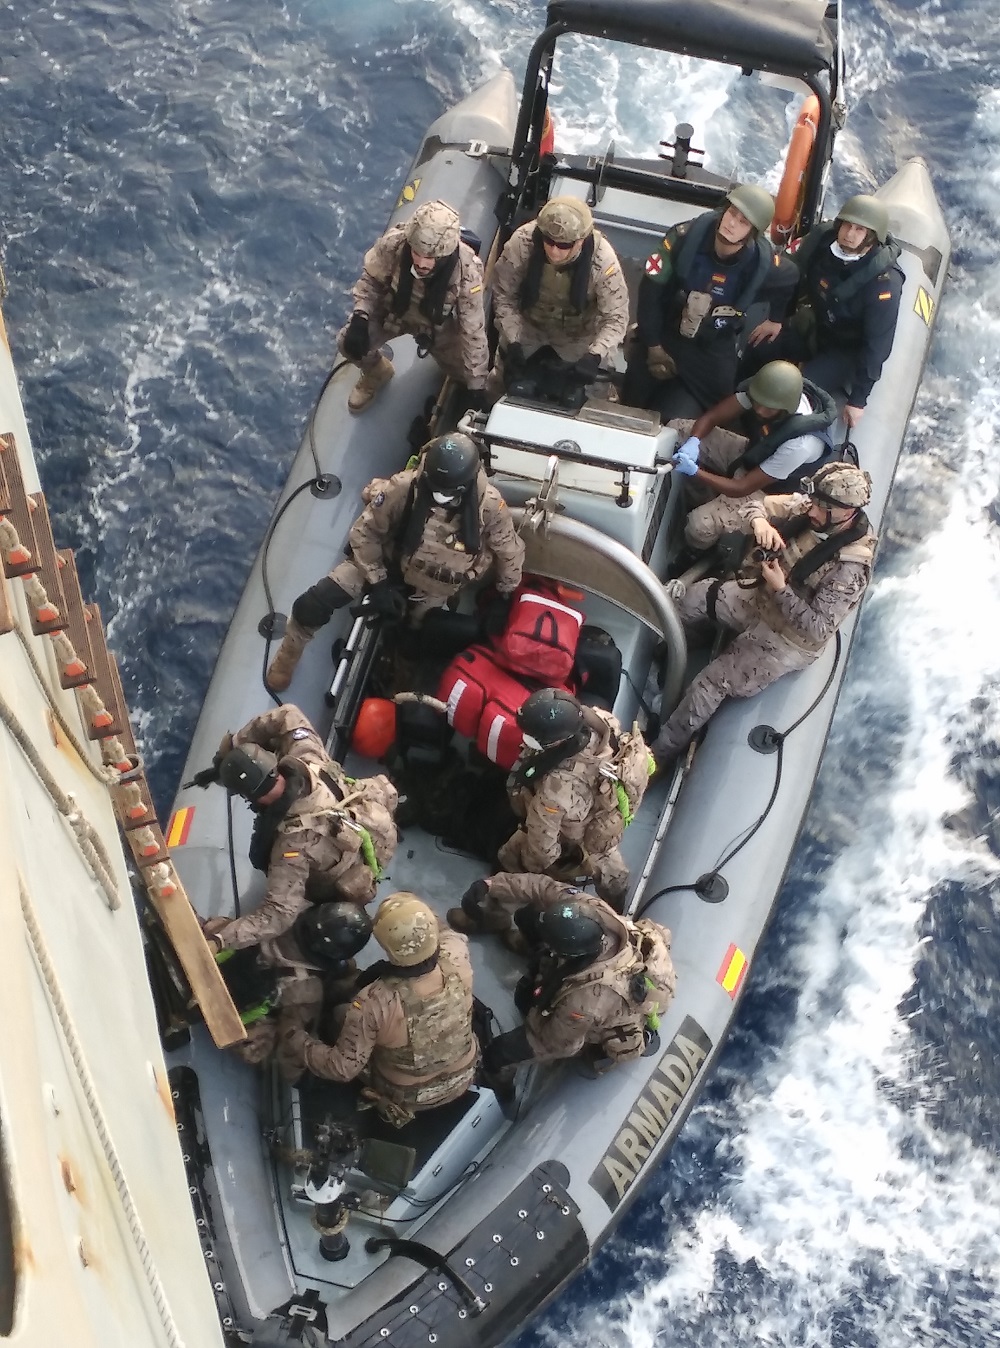 El buque “Meteoro” desplegado en la operación Atalanta da asistencia médica a un barco somalí